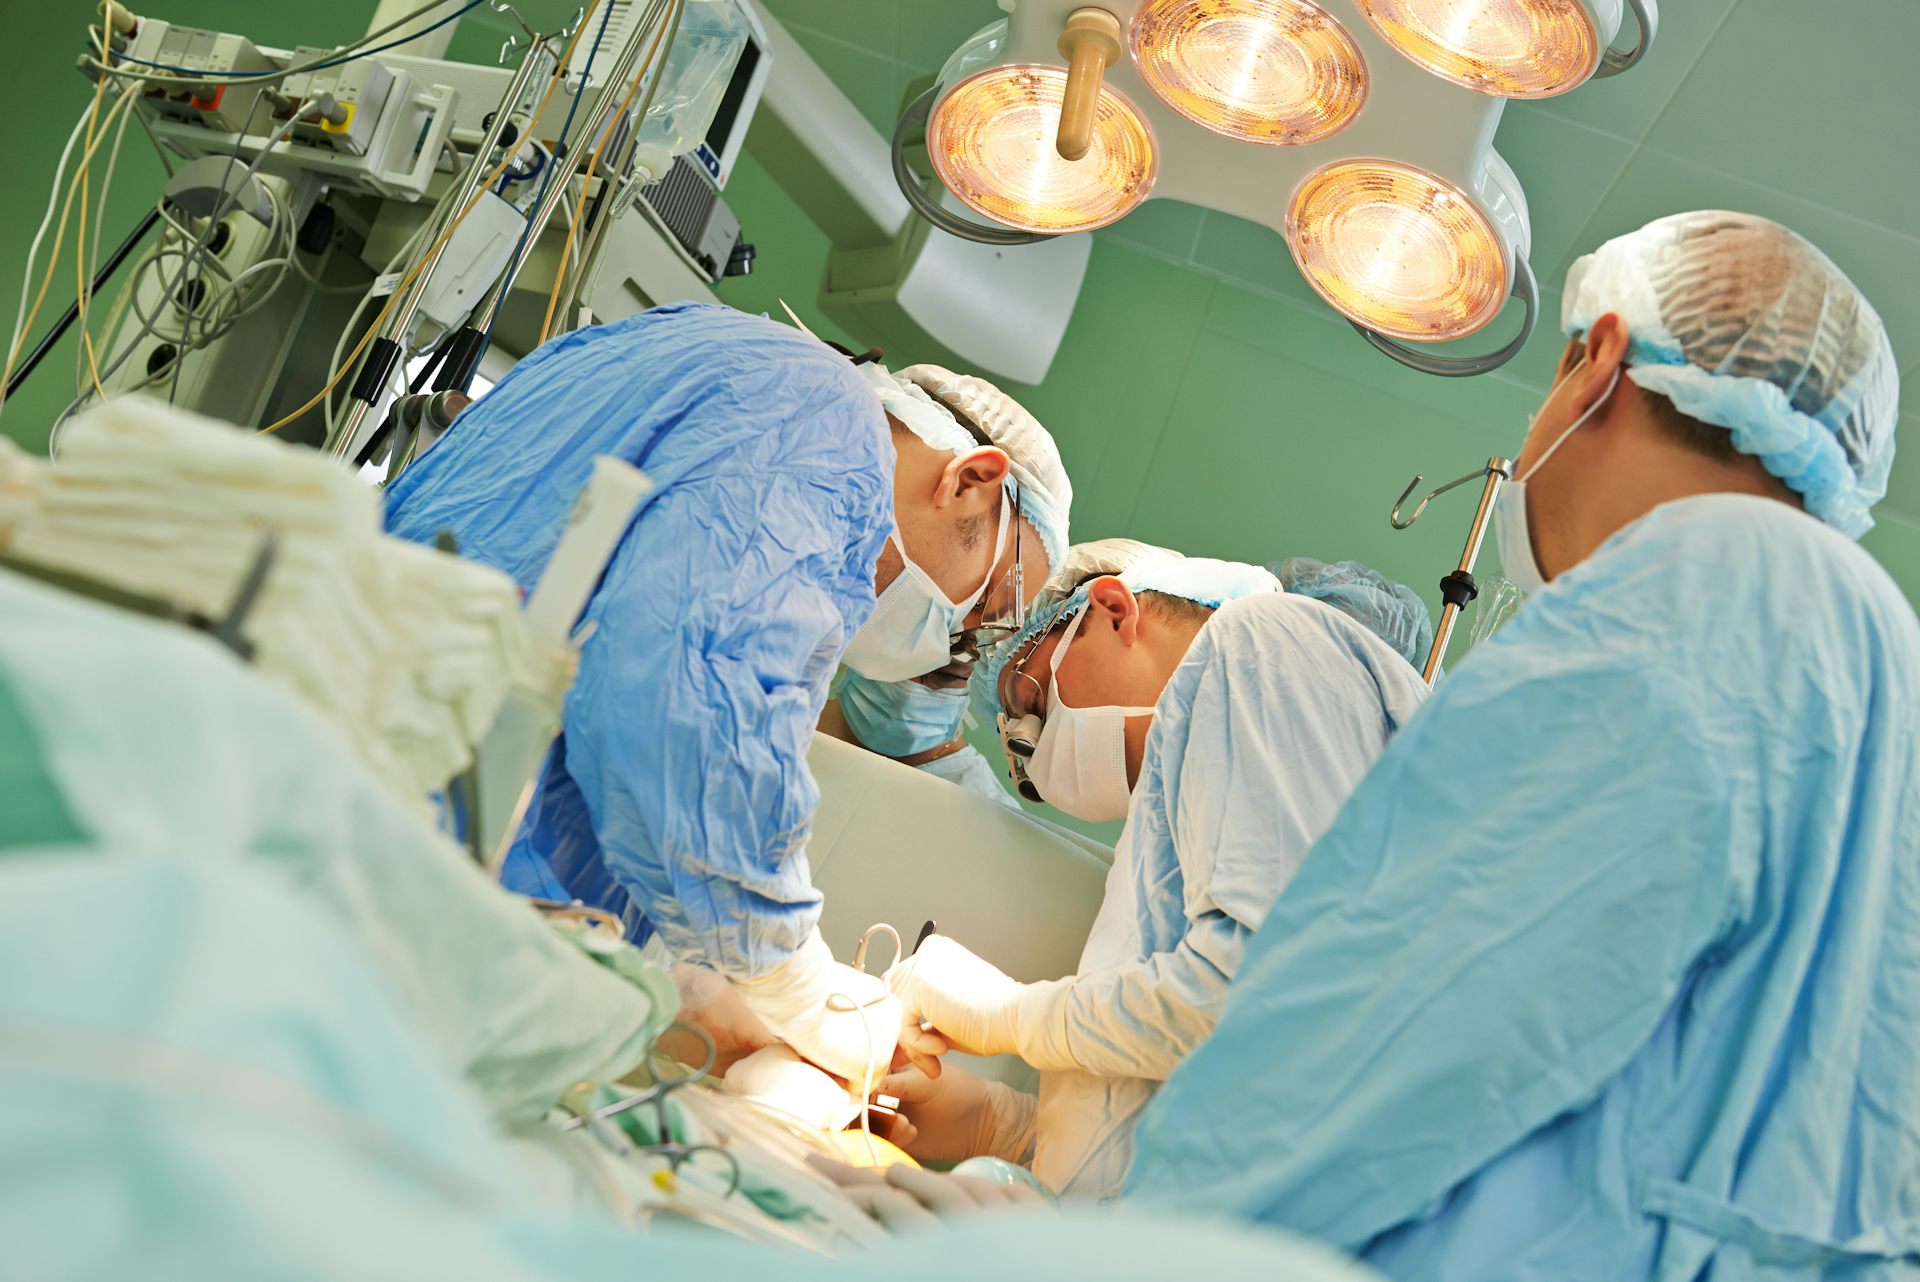 1 хирургический стол после операции